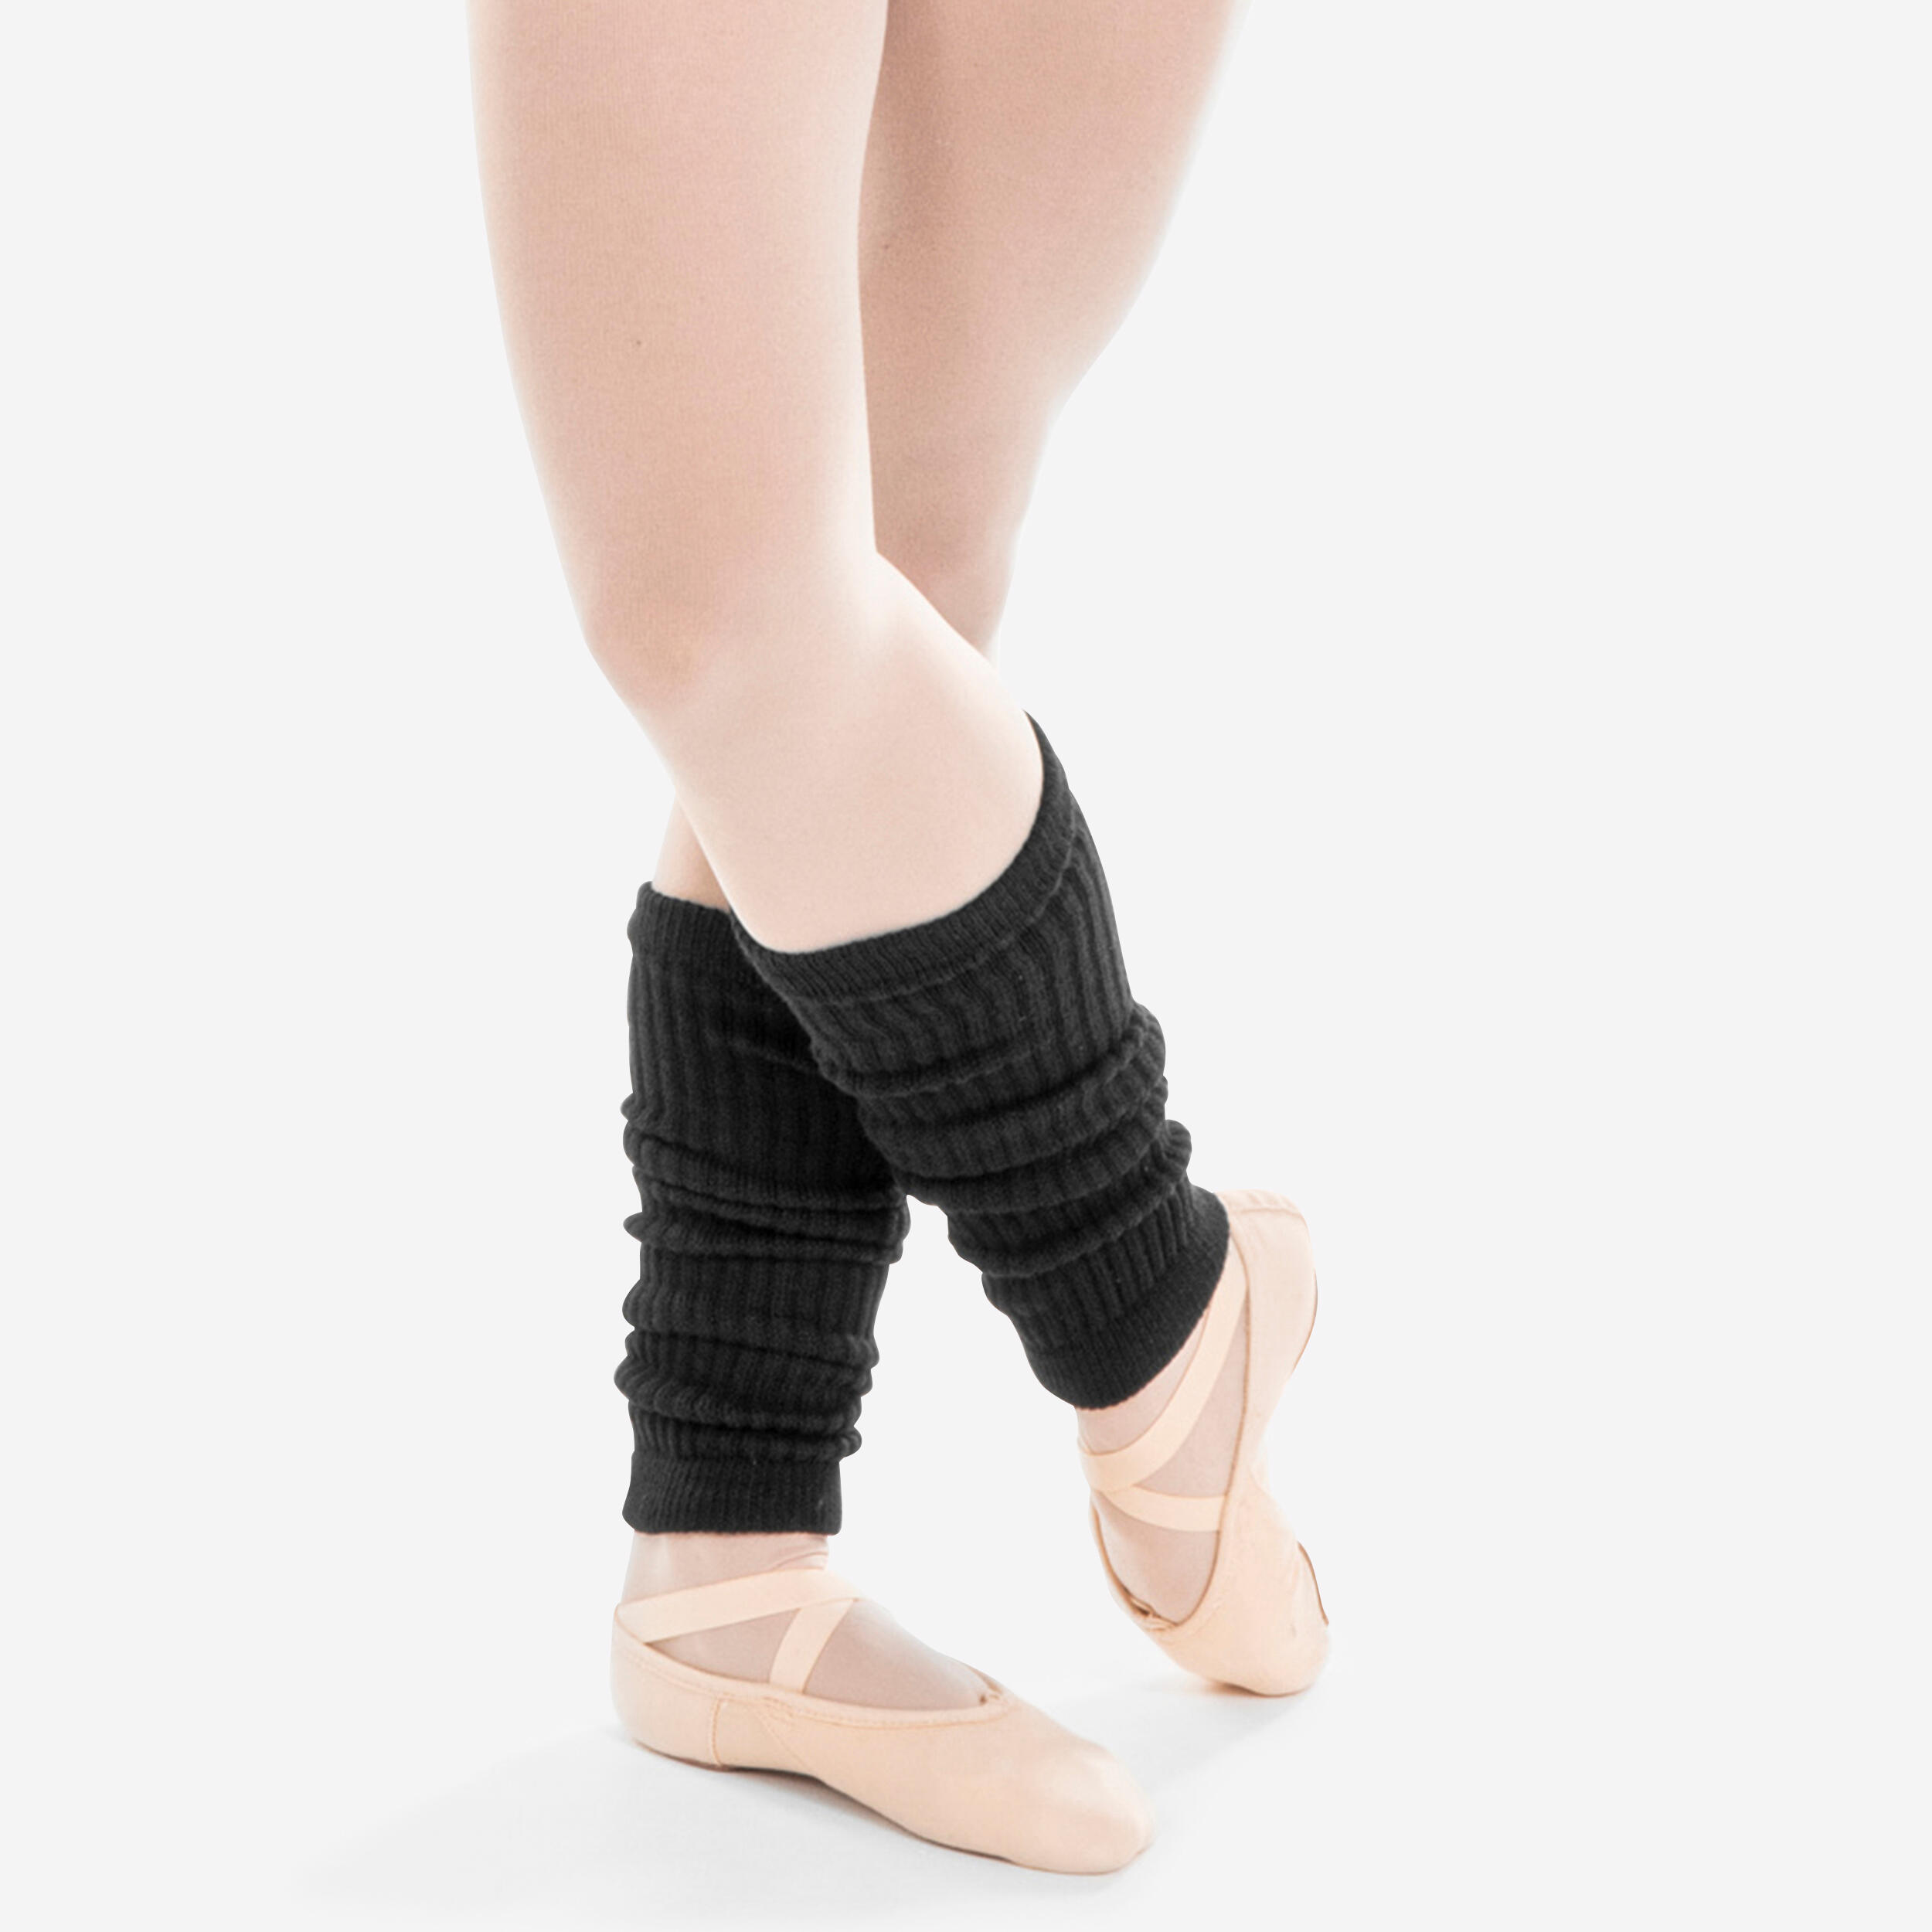 STAREVER Girls' Ballet and Modern Dance Leg Warmers - Black